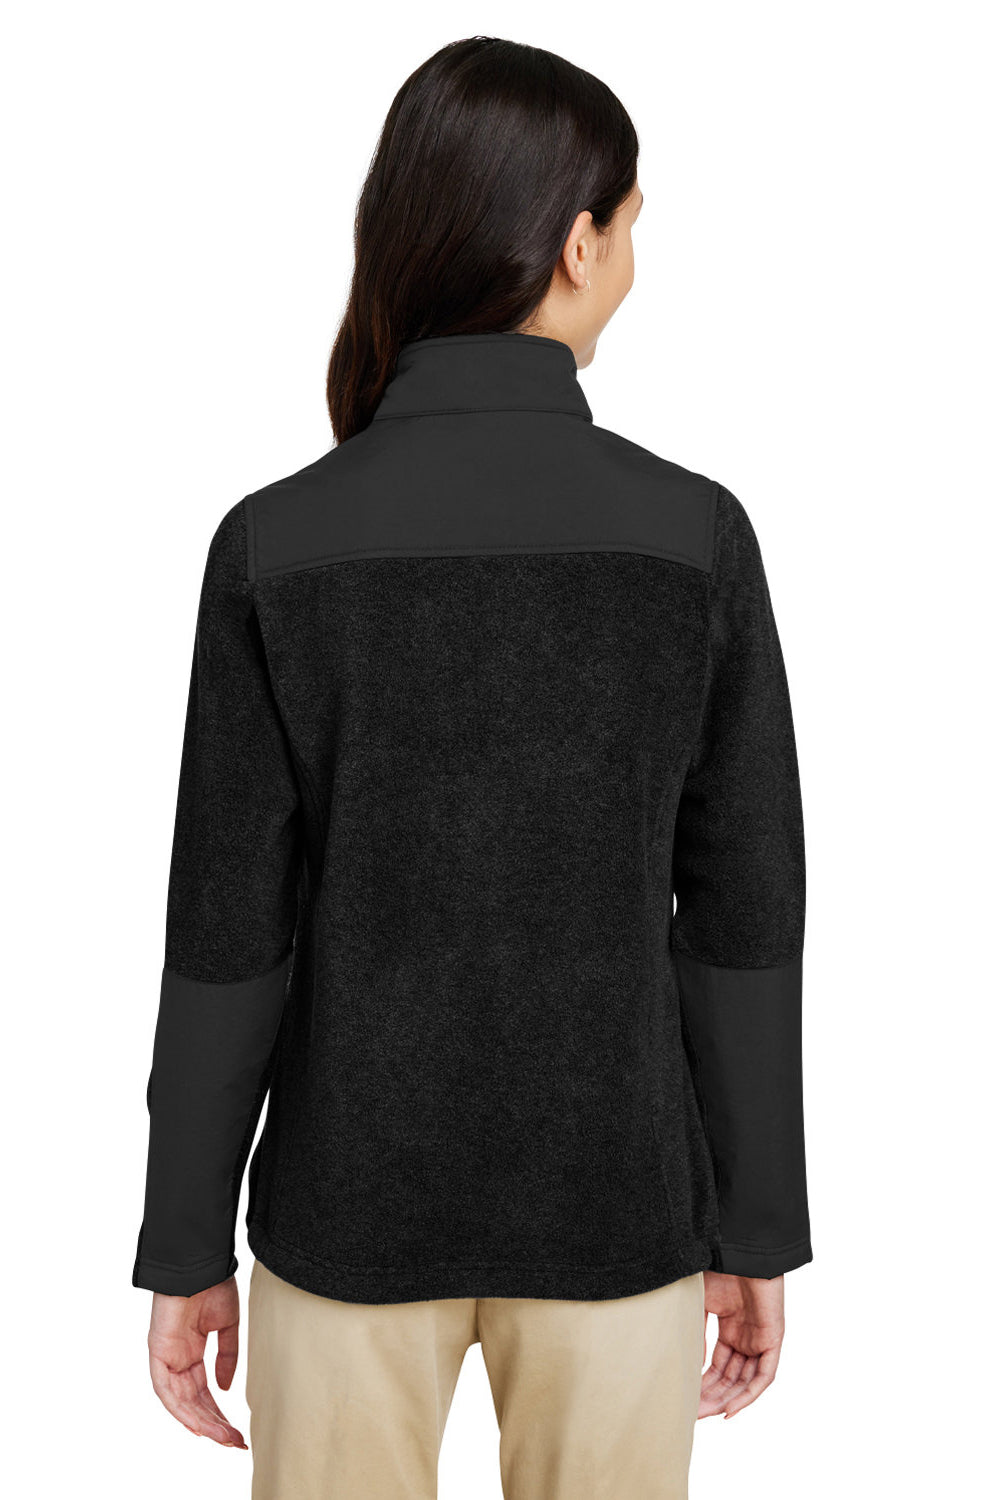 Core 365 CE890W Womens Journey Summit Hybrid Full Zip Jacket Black Back